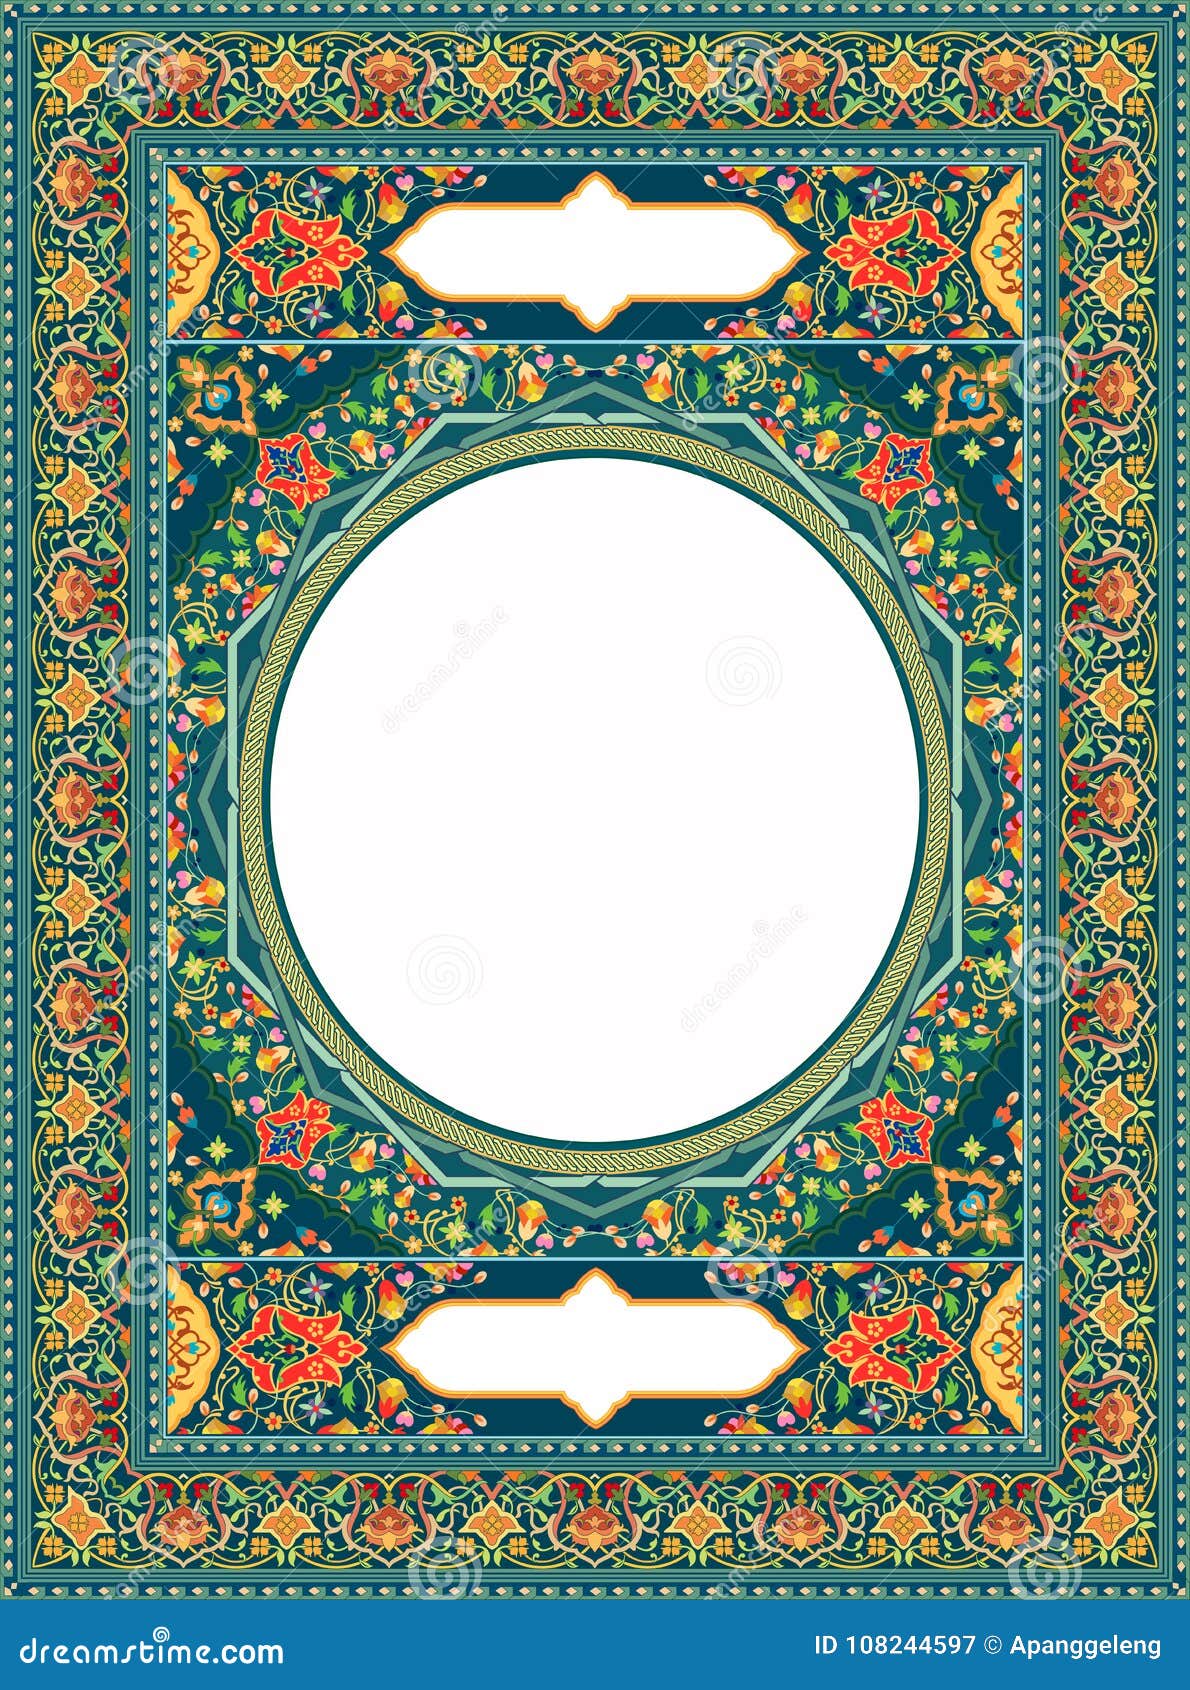 Mê đắm với Quran Border đầy tinh tế! Những thiết kế này sẽ khiến bạn phấn khích và tự hào khi sử dụng sách Quran của mình. Hãy xem hình ảnh liên quan để khám phá những đường viền tuyệt đẹp này và đồng hành cùng chúng tôi tạo nên một sản phẩm hoàn hảo!